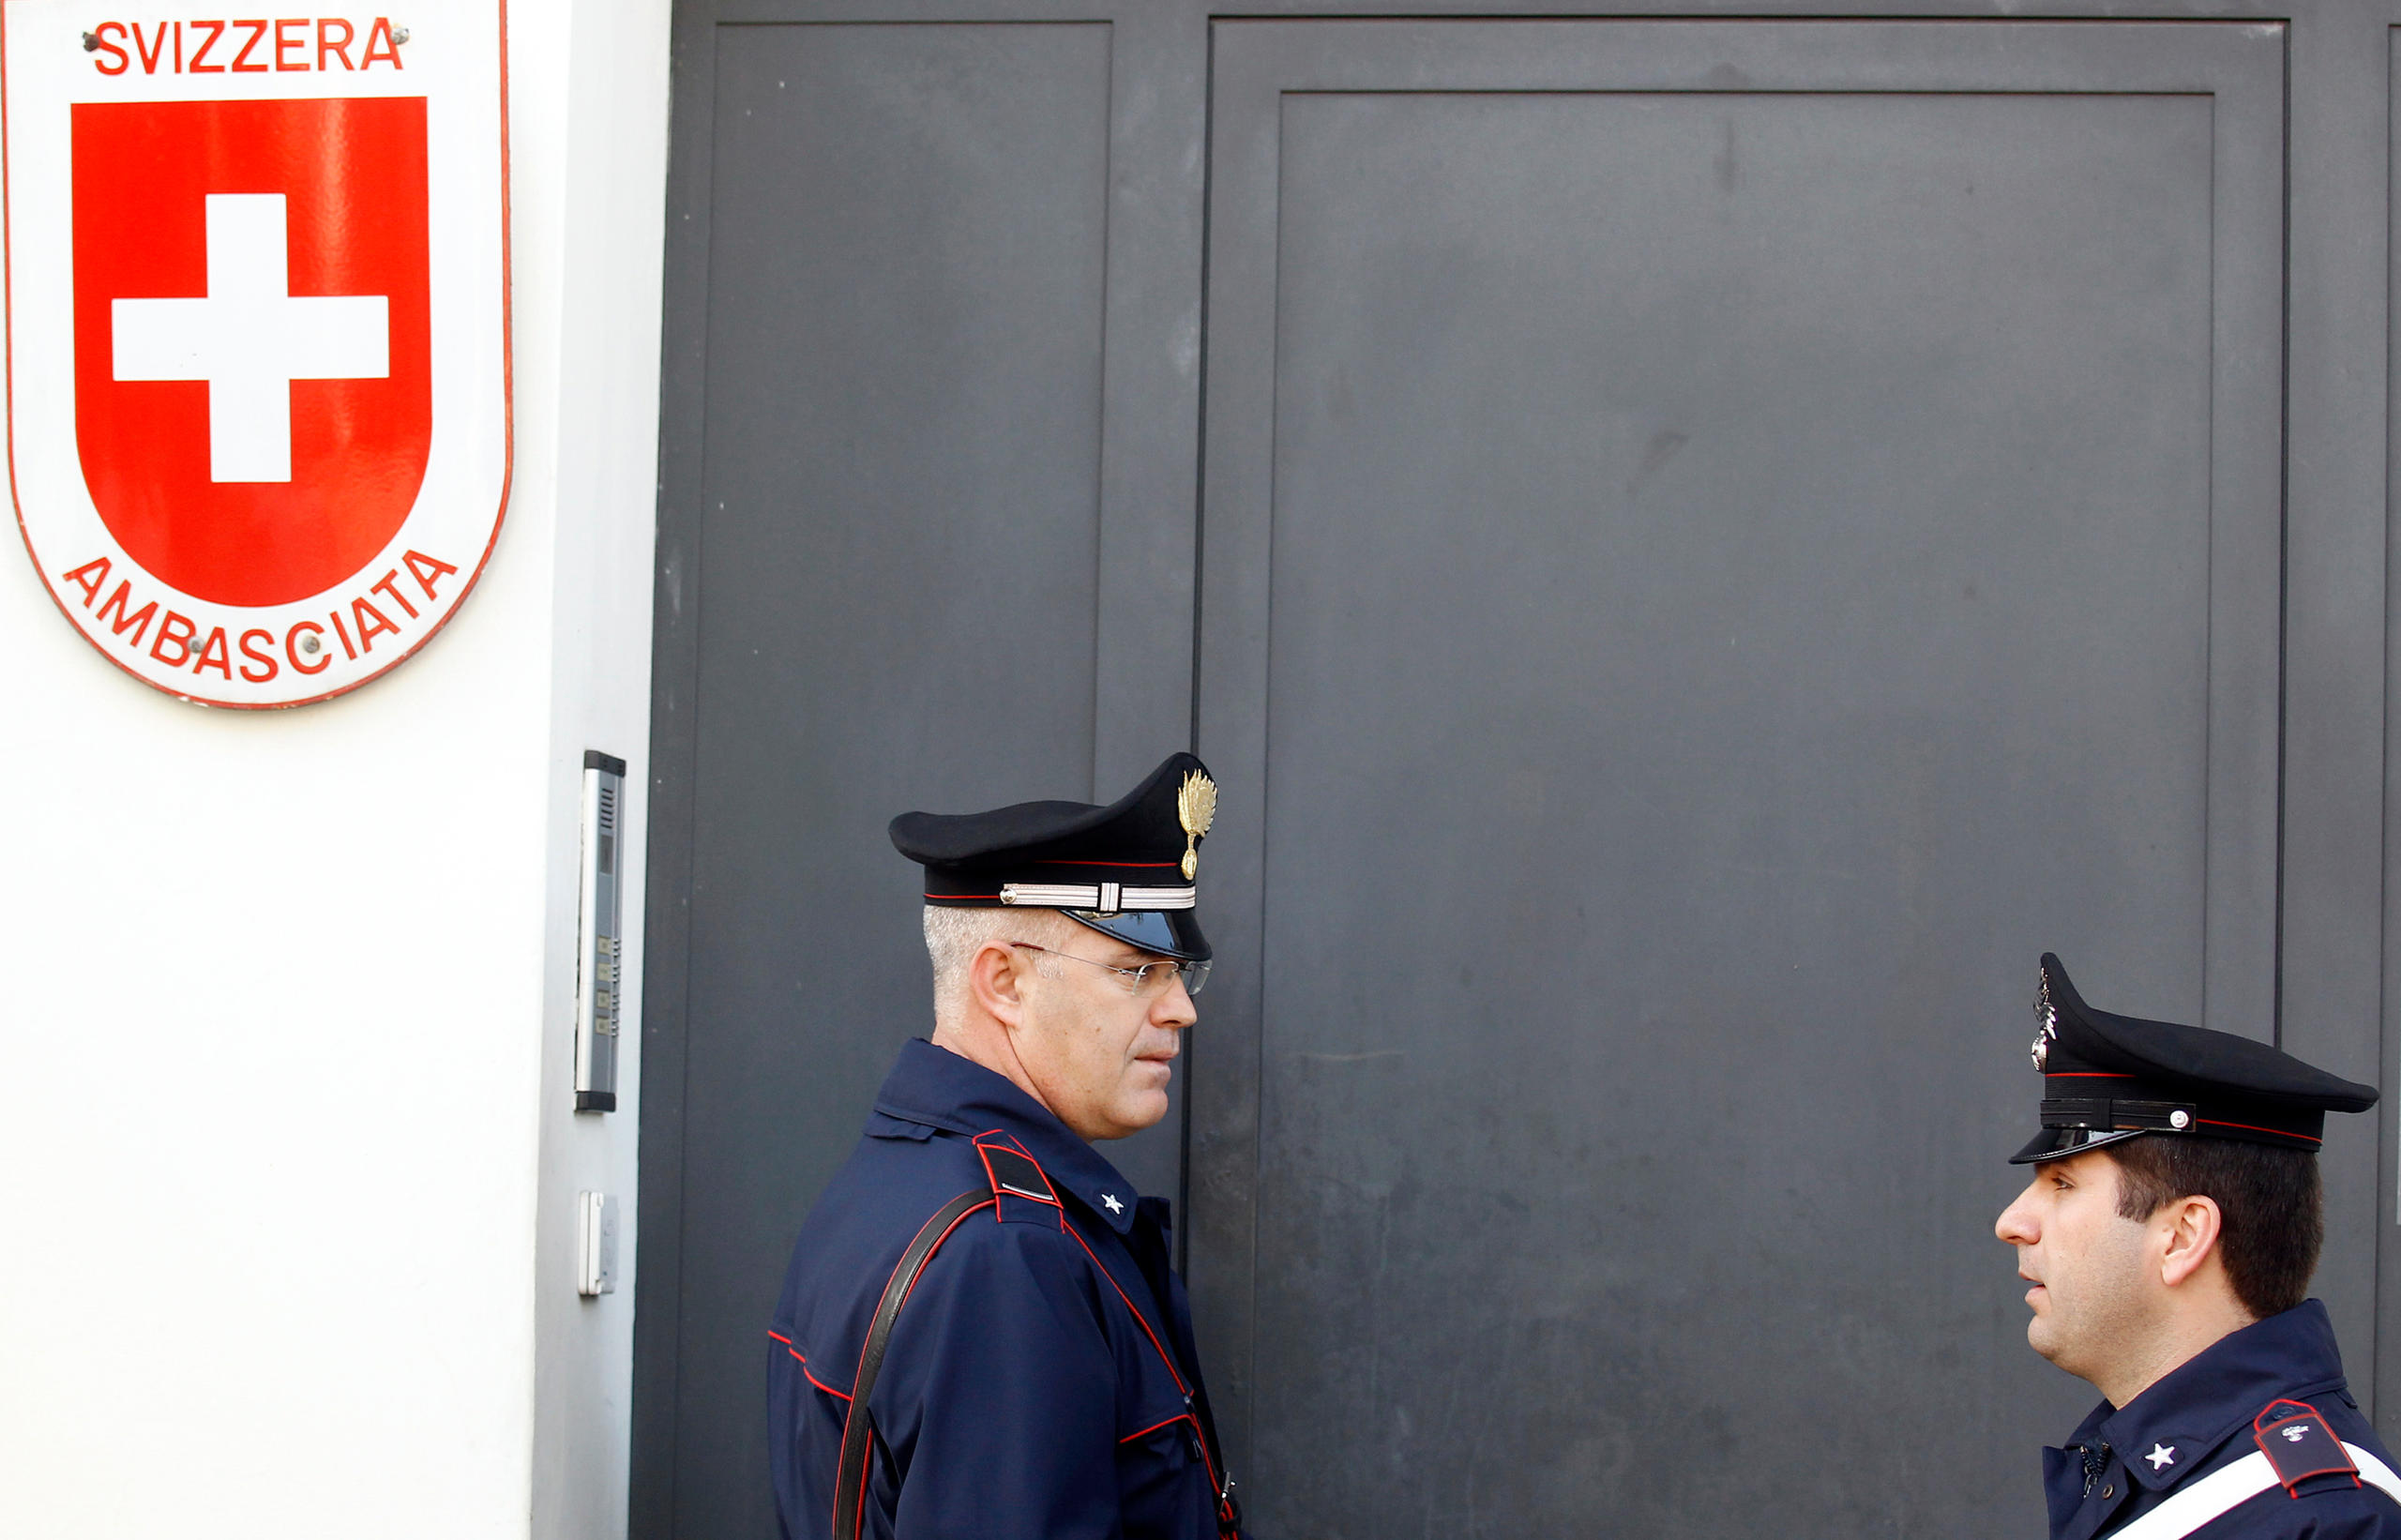 Zwei italienische Polizisten vor einer Schweizer Botschaft